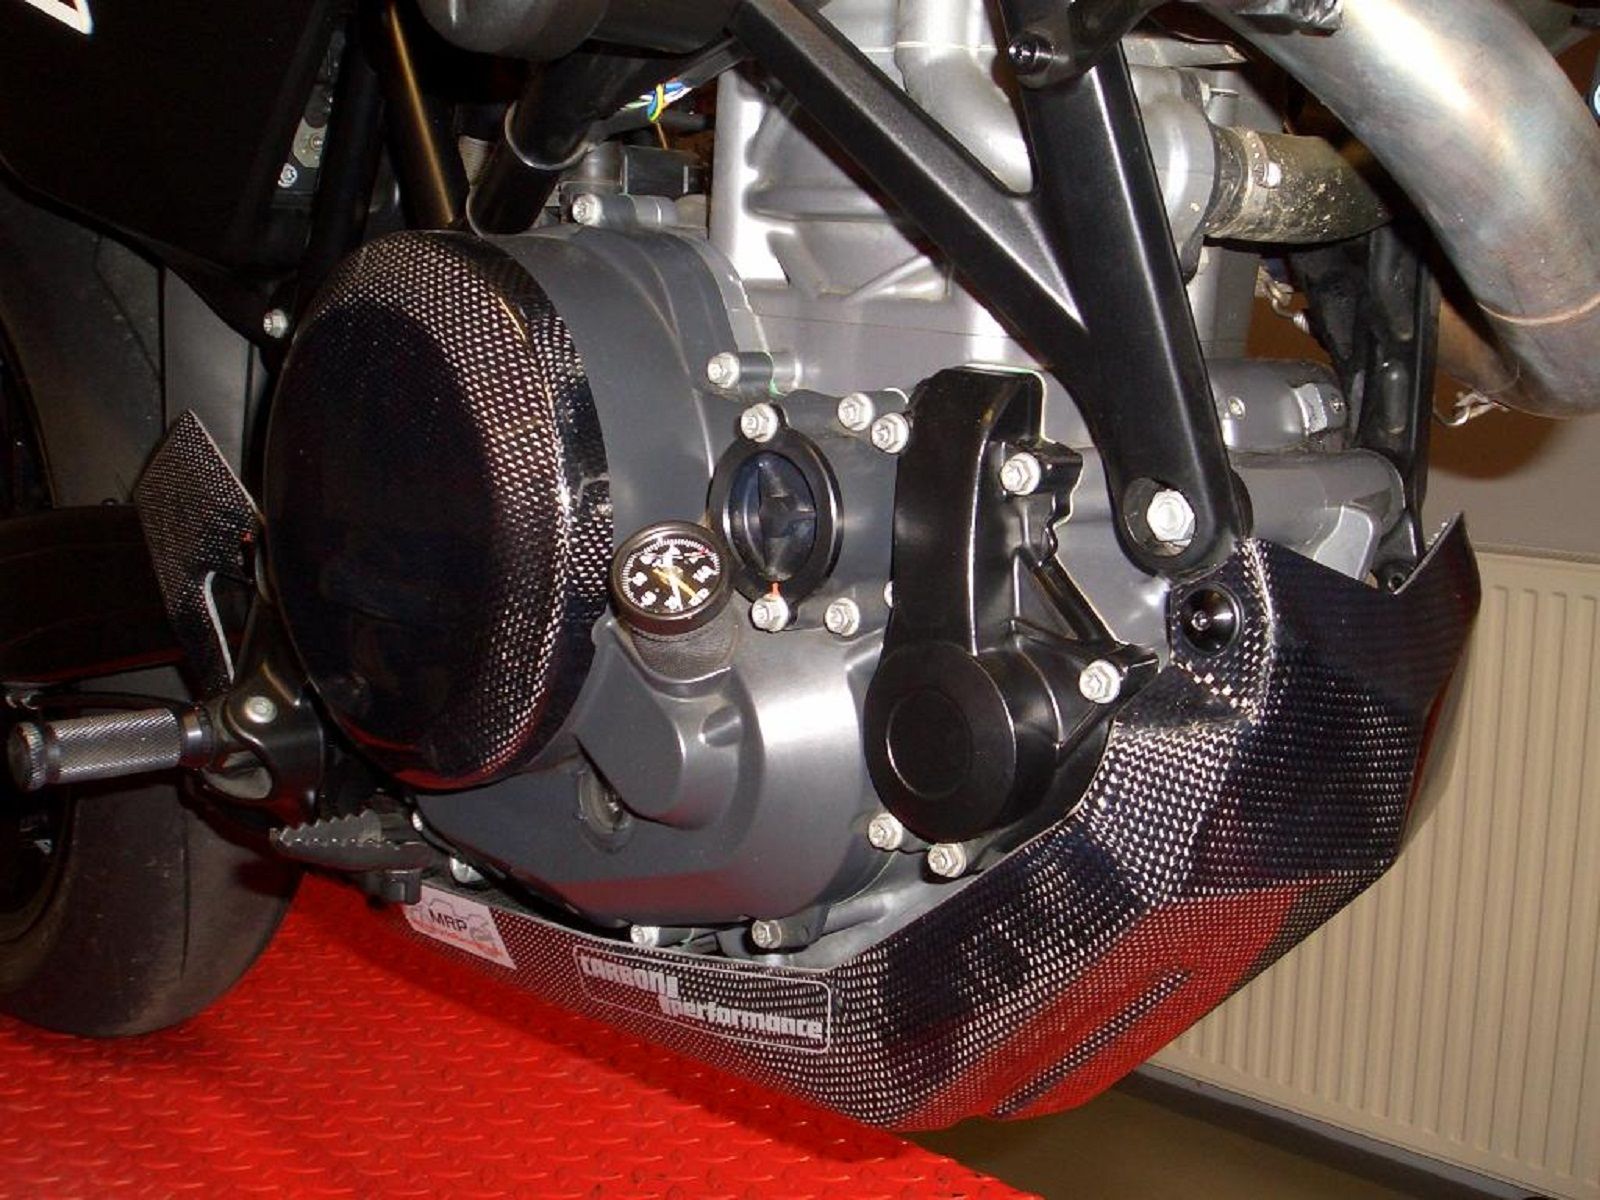 2012 KTM 450 SMR